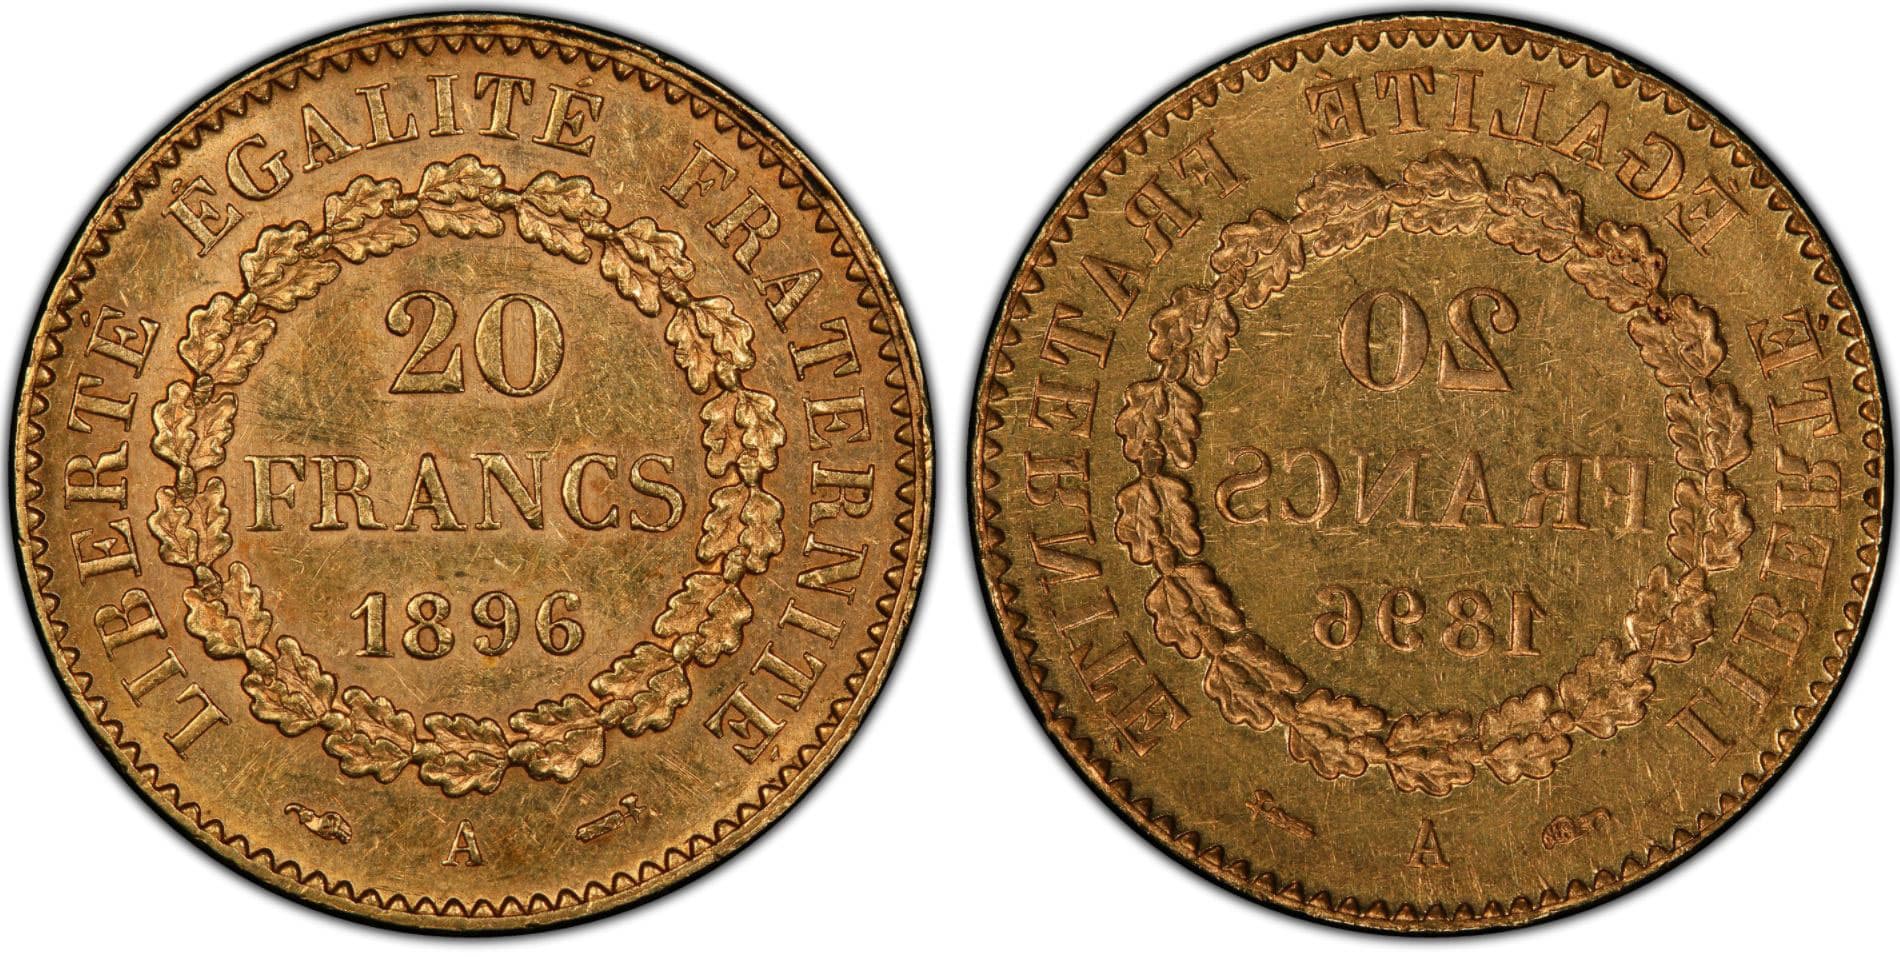 France 1896-A 20 Francs Faisceau privy Gad-1063, Full Brockage Reverse Mint Error, PCGS AU58. Courtesy of PCGS TrueView